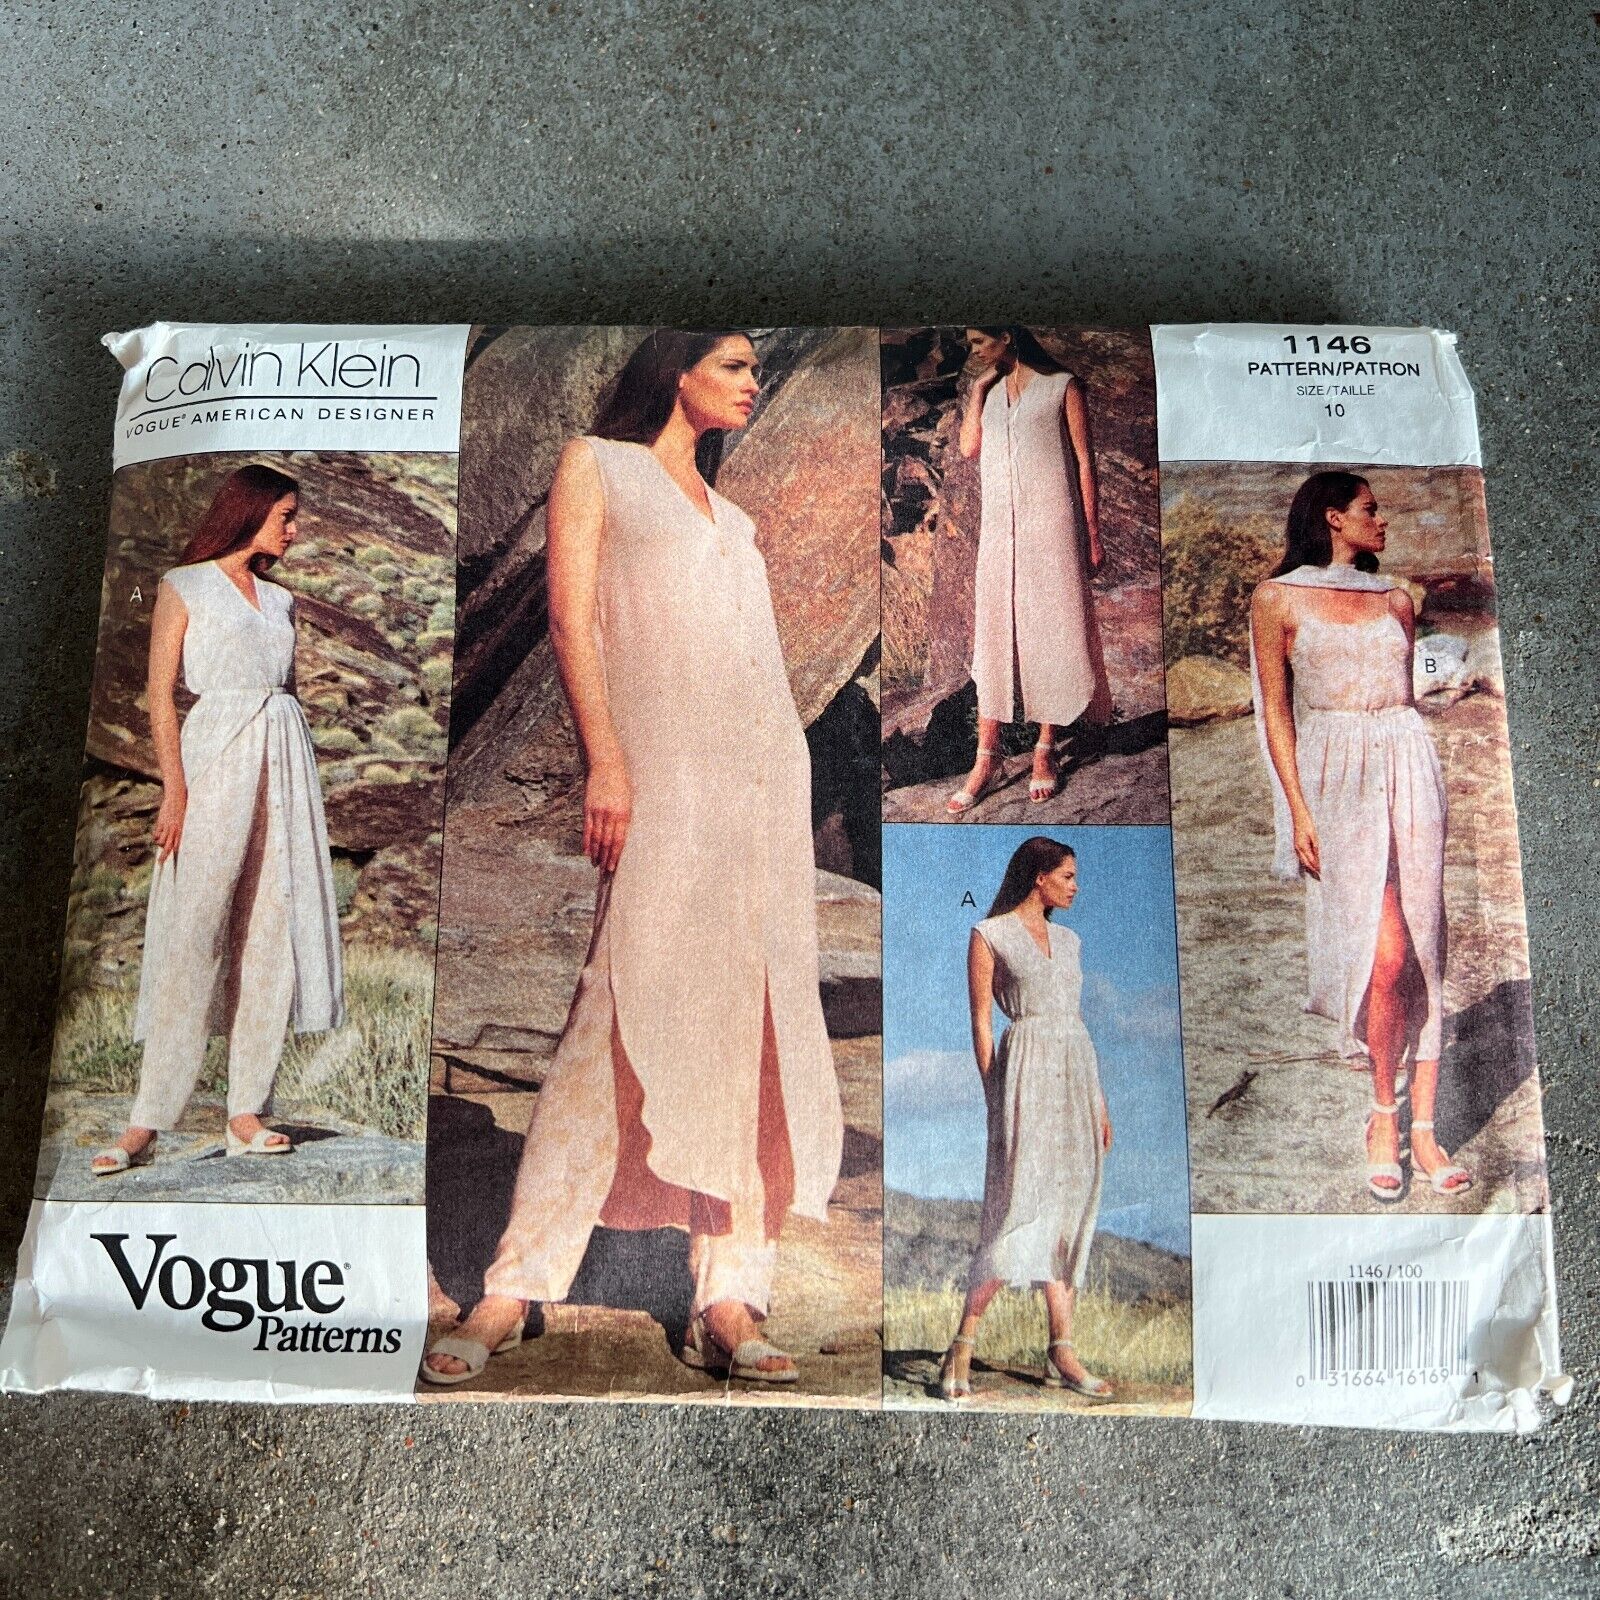 Vintage Vogue Patterns 1146 by Calvin Klein 90s SZ 10